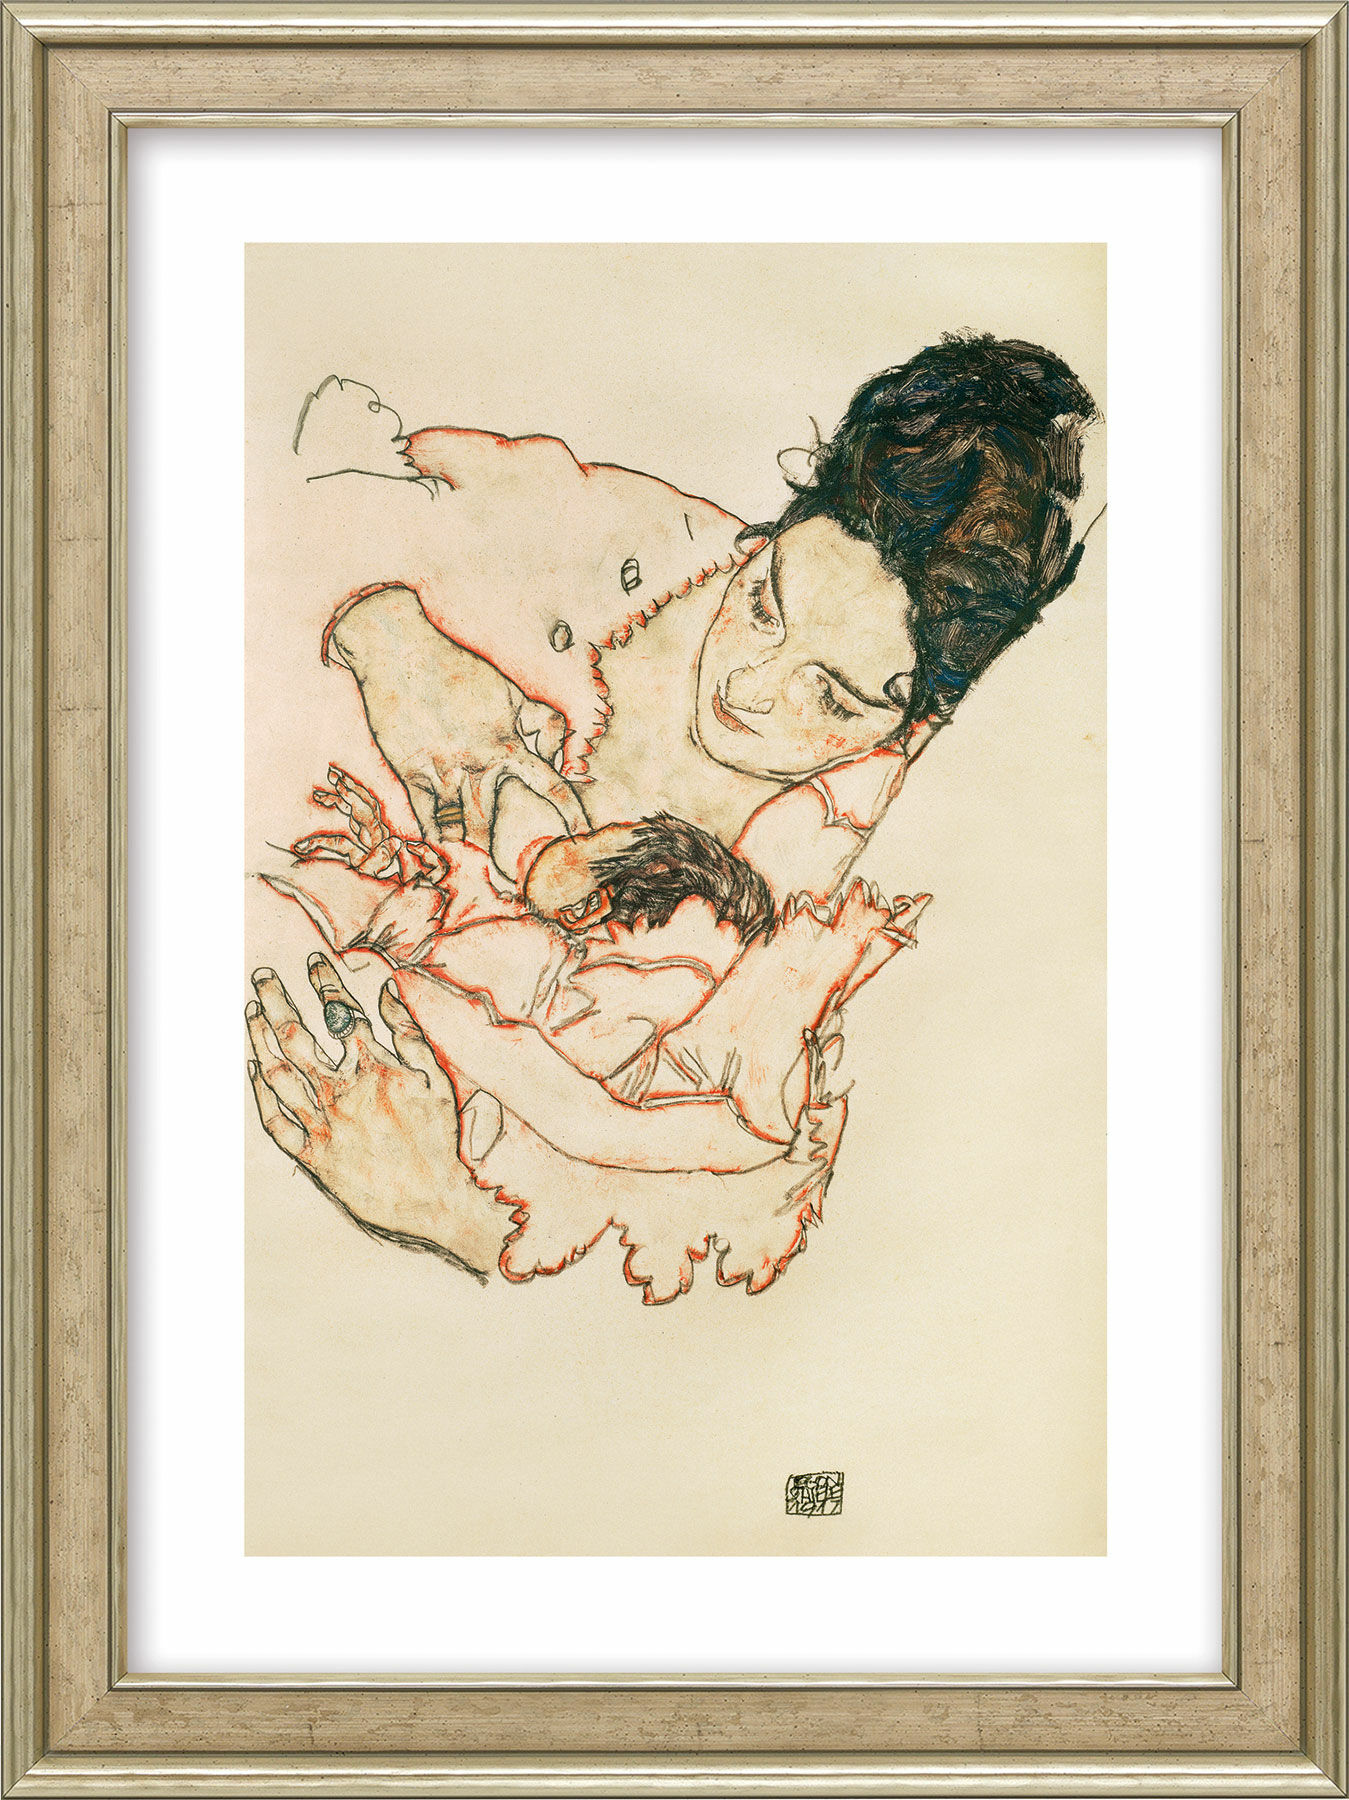 Bild "Stillende Mutter (Stephanie Grunewald)" (1917), gerahmt von Egon Schiele